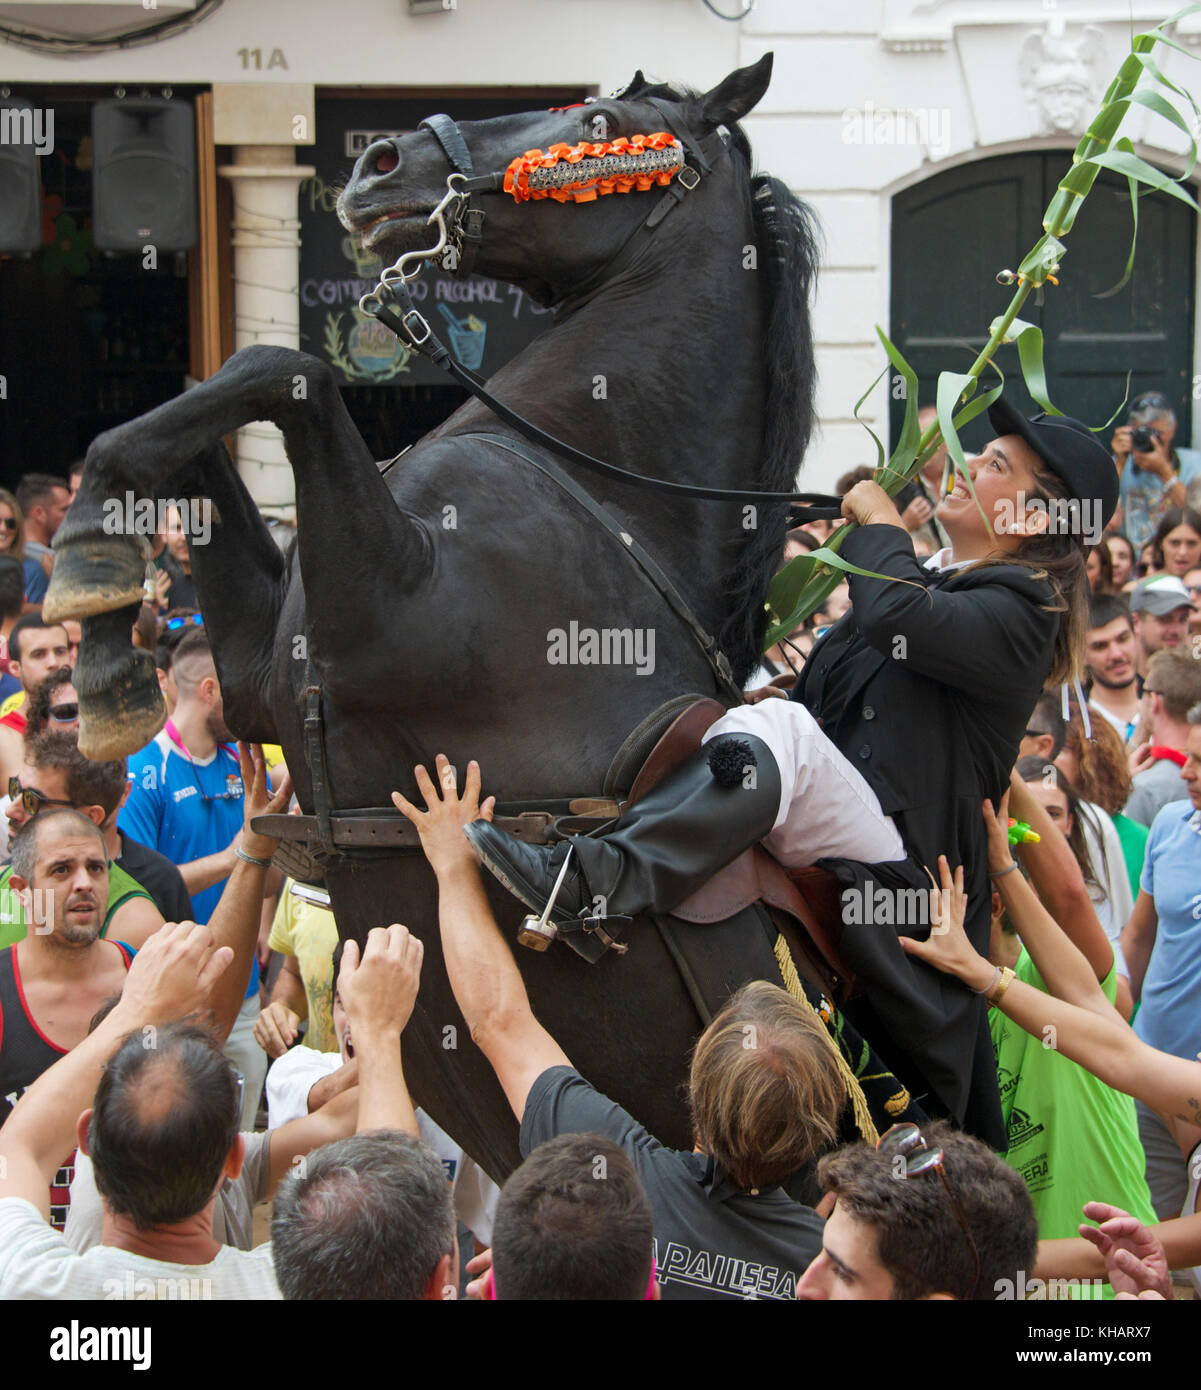 Rider ou femelle ou Caixer avec cheval élevage célèbre finale Mare de Déu de Gràcia Constituion festival Place Mao Menorca Espagne Banque D'Images